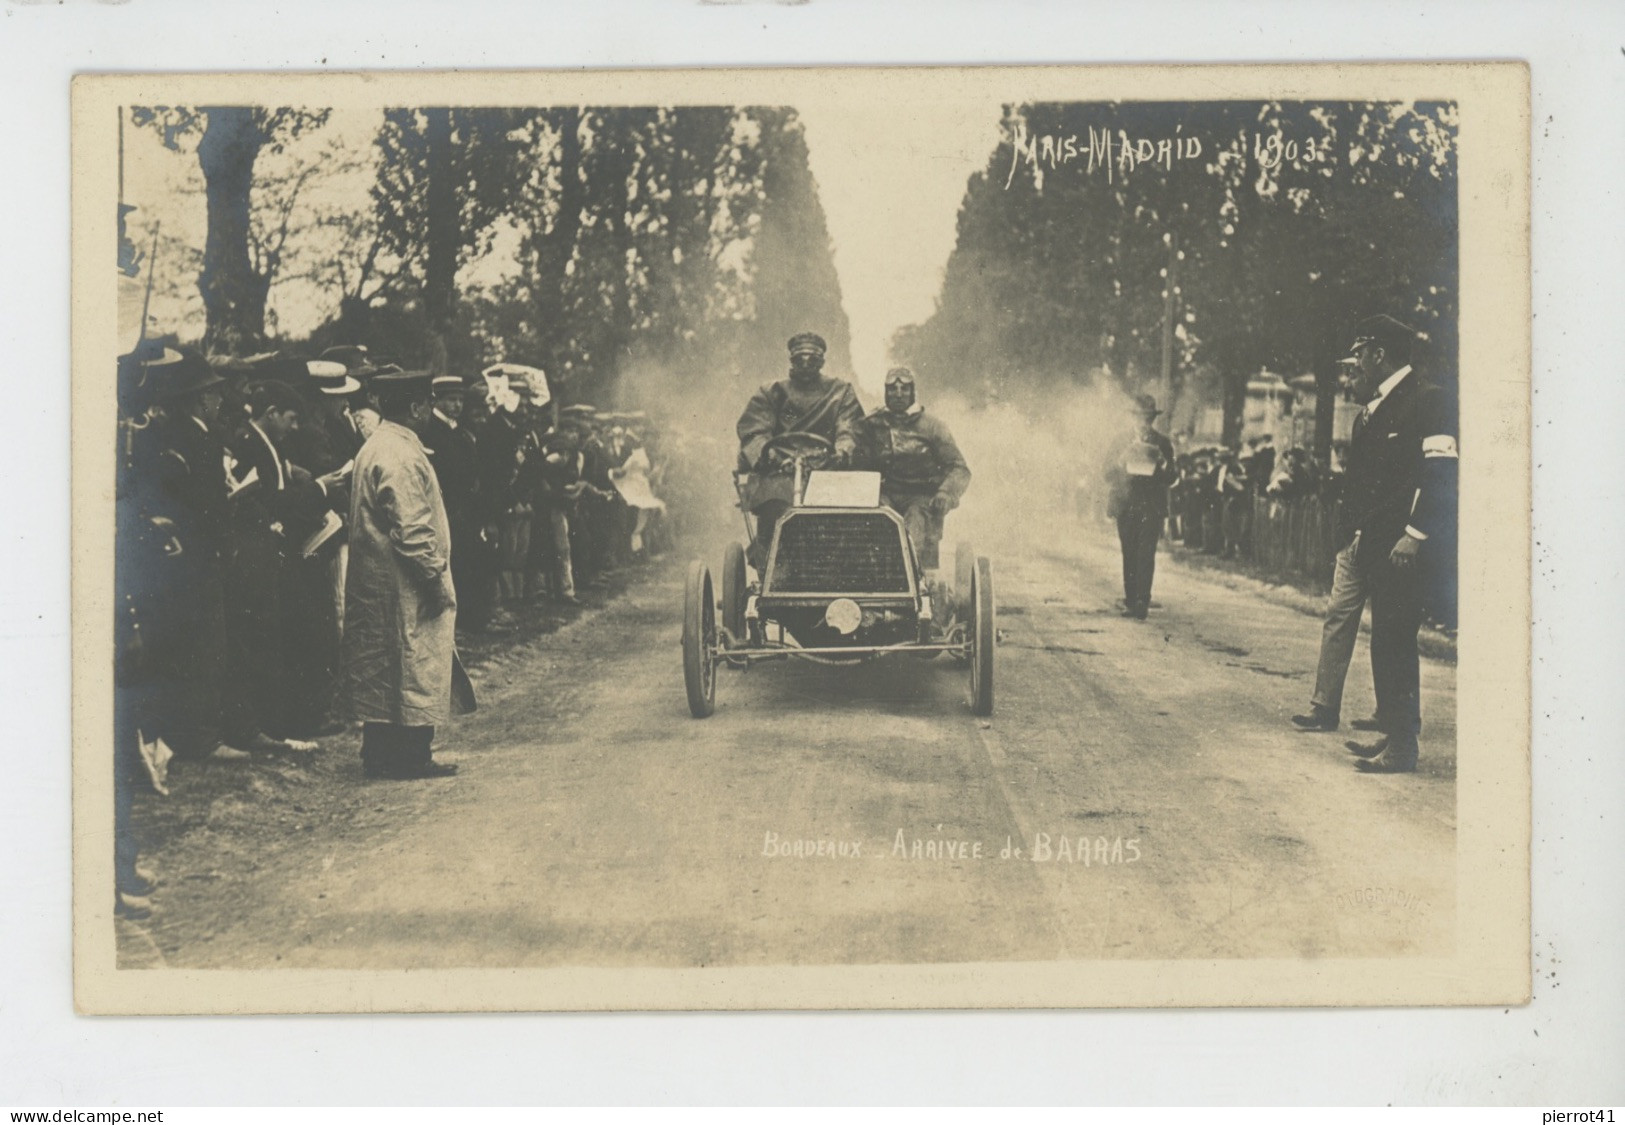 SPORT AUTOMOBILE - COURSE PARIS MADRID 1903 - BORDEAUX - Arrivée De BARRAS - Carte Photo Réalisée Par Photo SERENI - Rally Racing